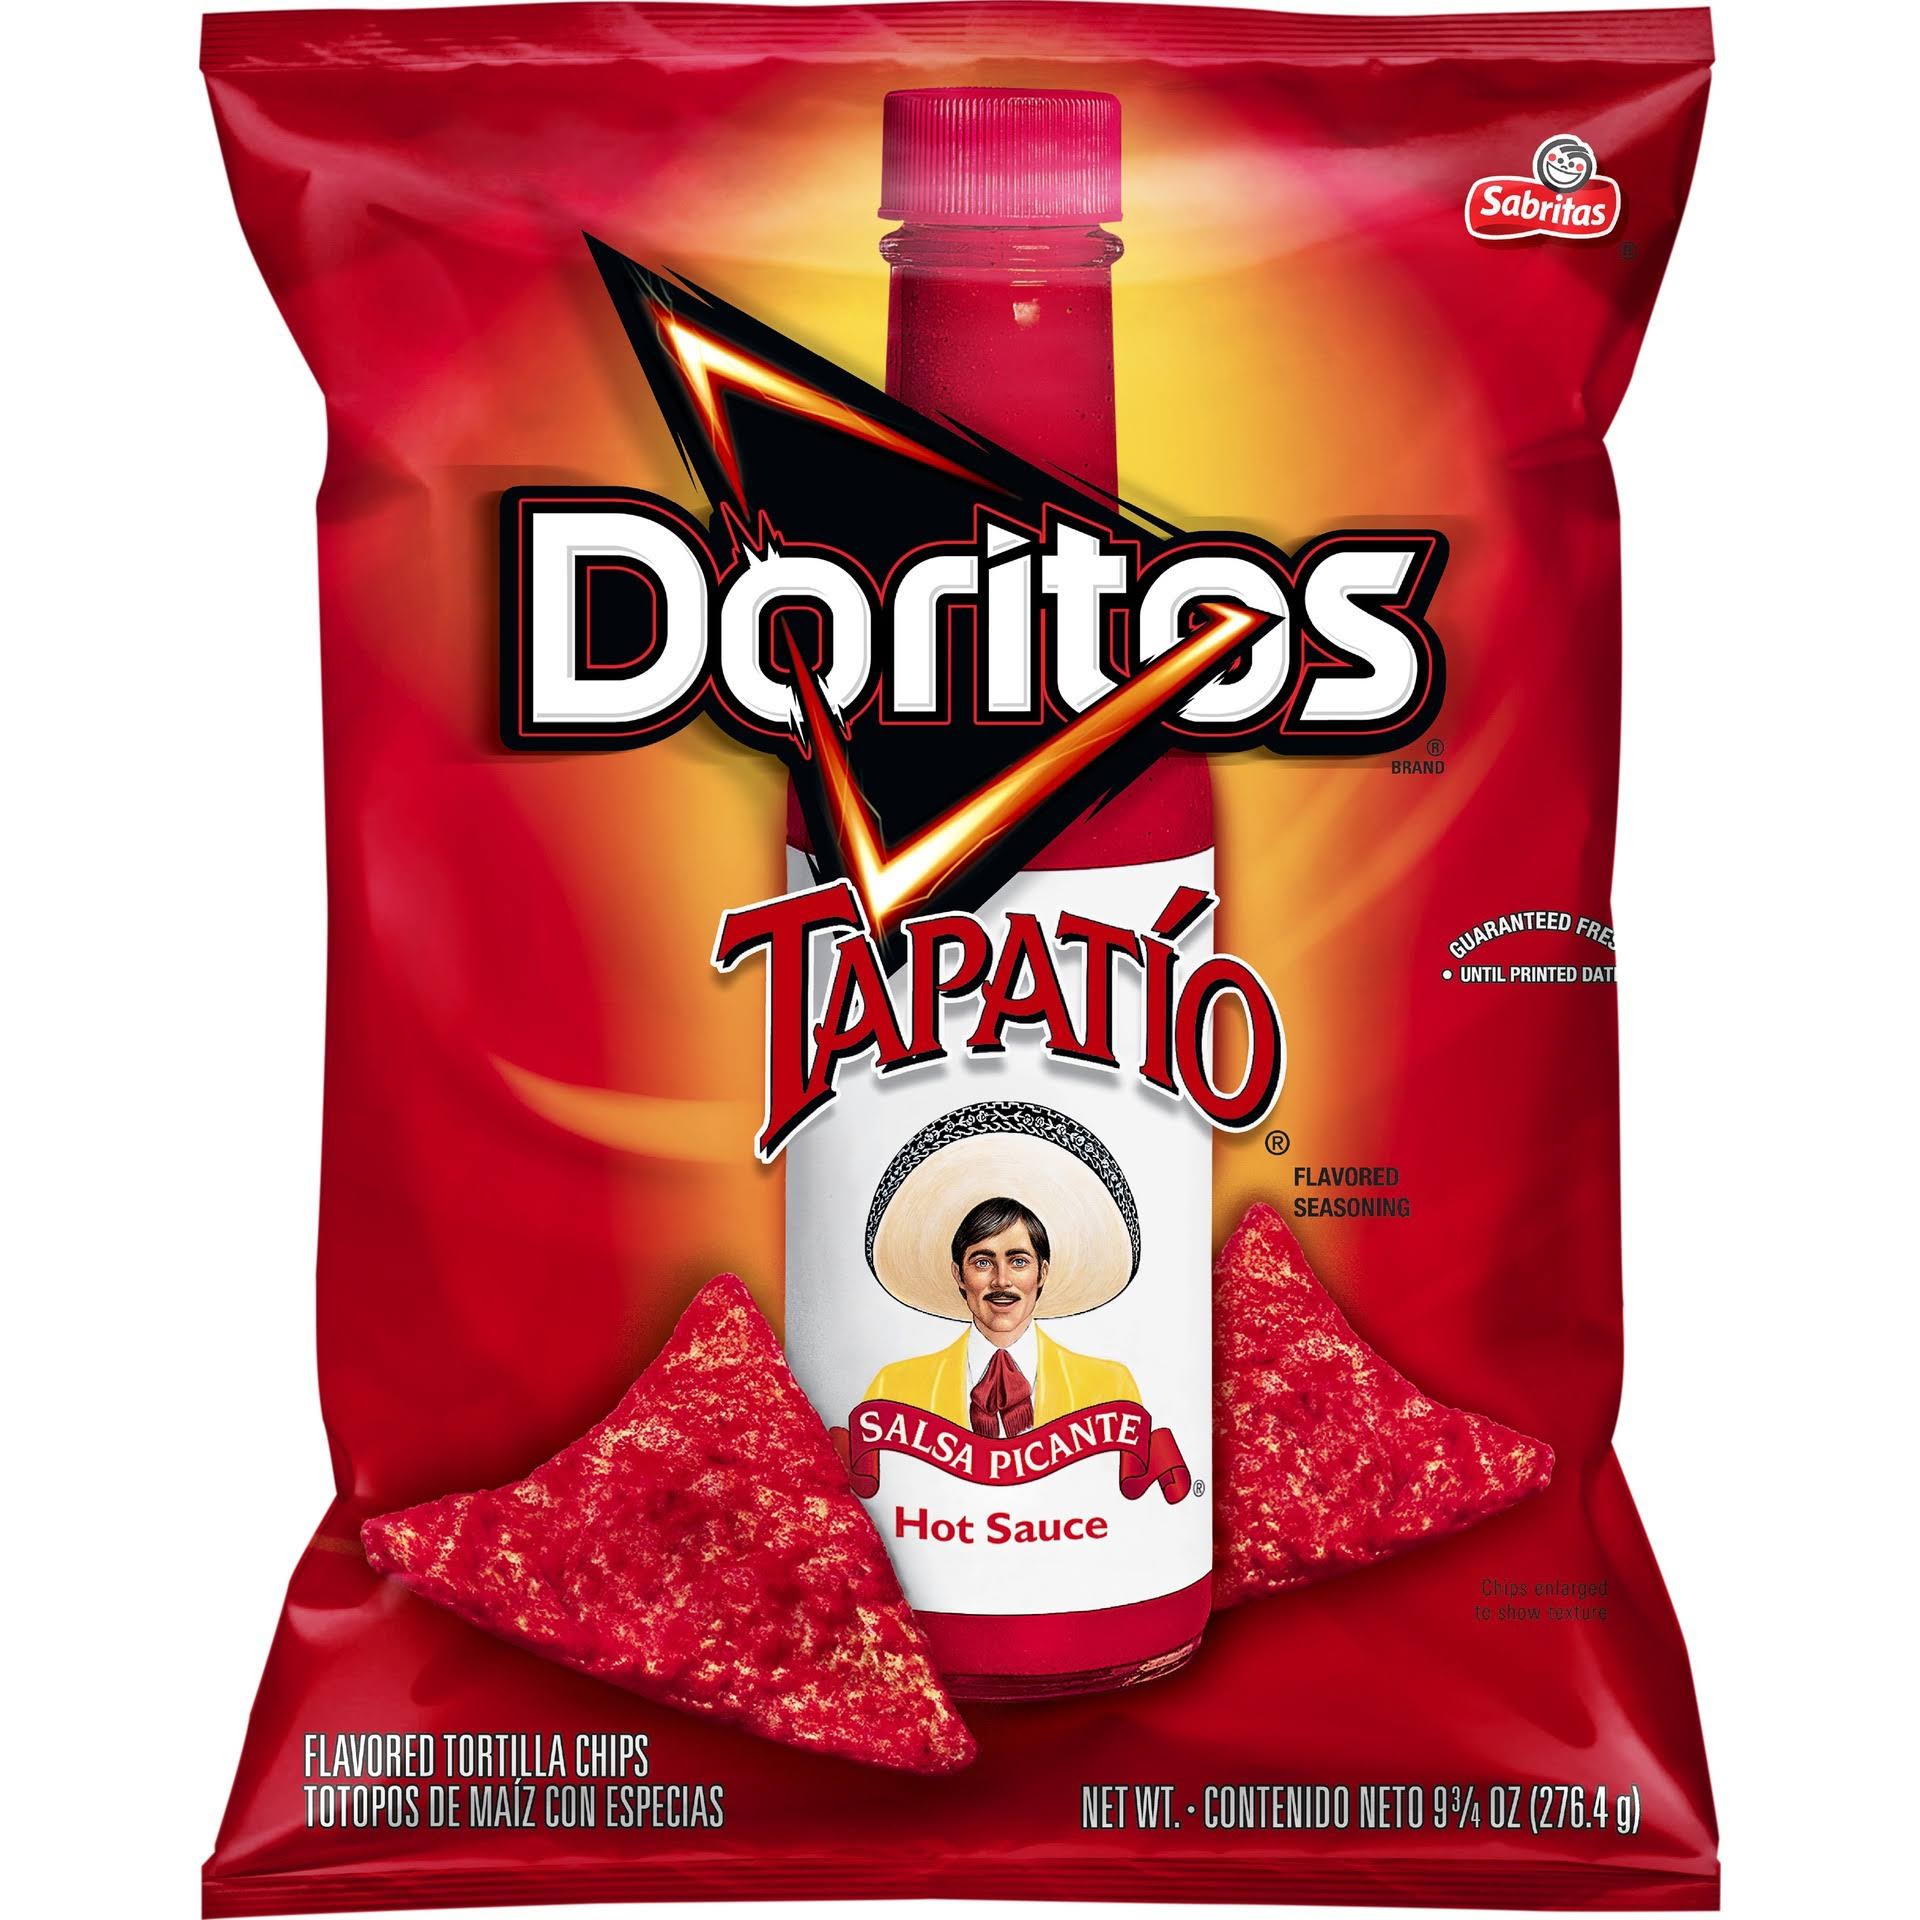 Doritos Tapatio Flavored Tortilla Chips - 9.75oz